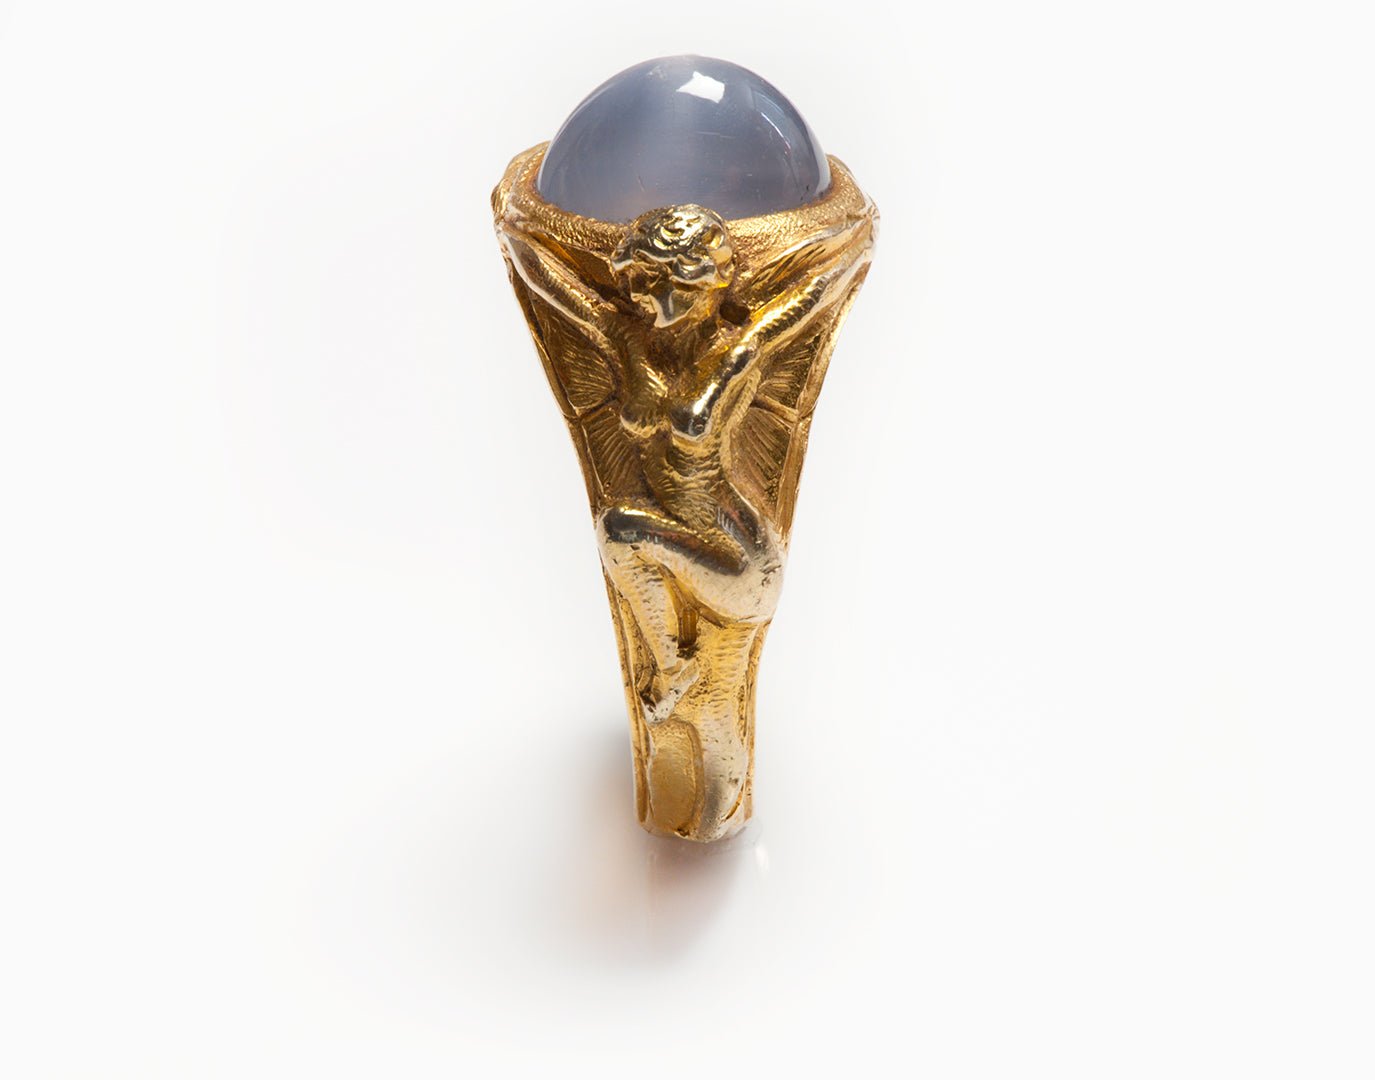 Antique Art Nouveau Star Sapphire Gold Men's Ring